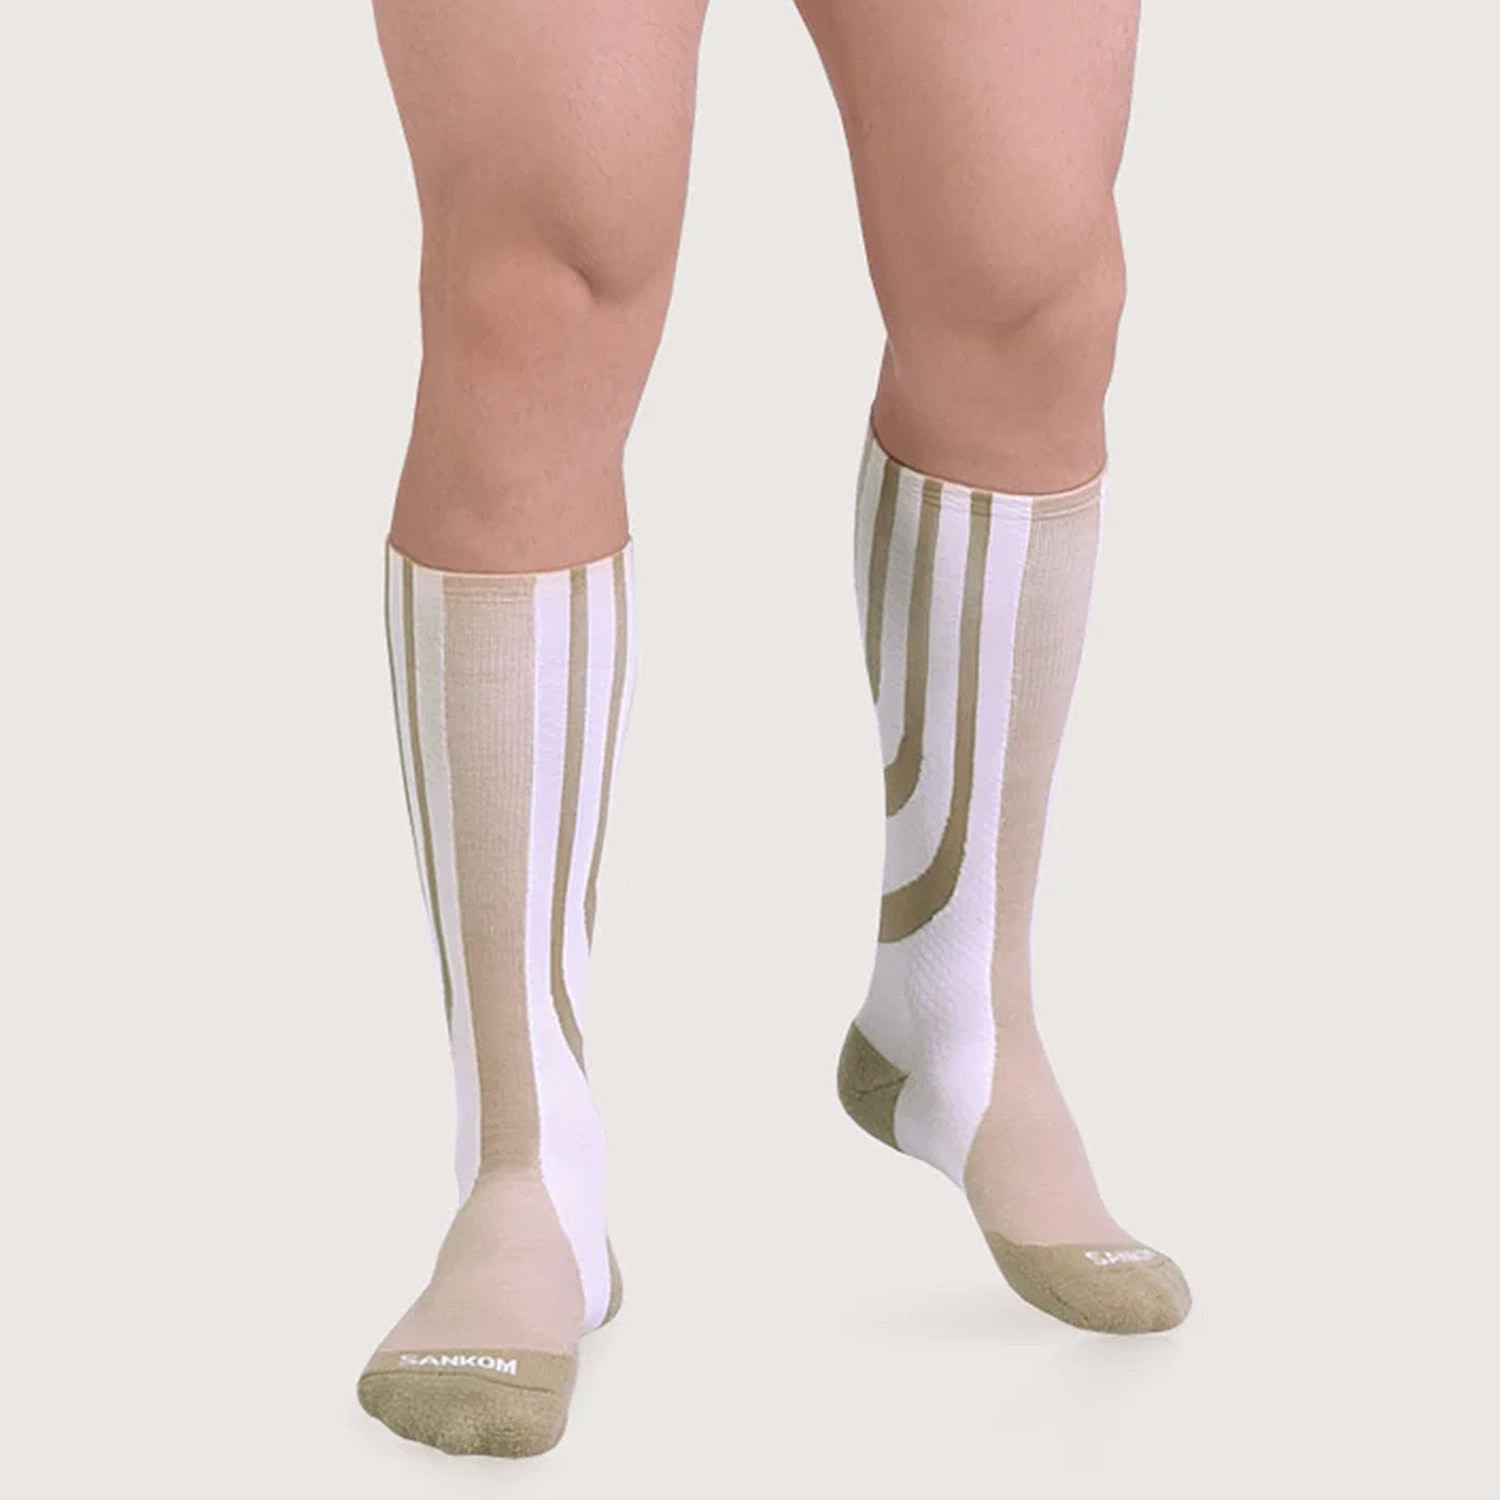 Sankom-Socks-Size-1x1x1-cm-Beige